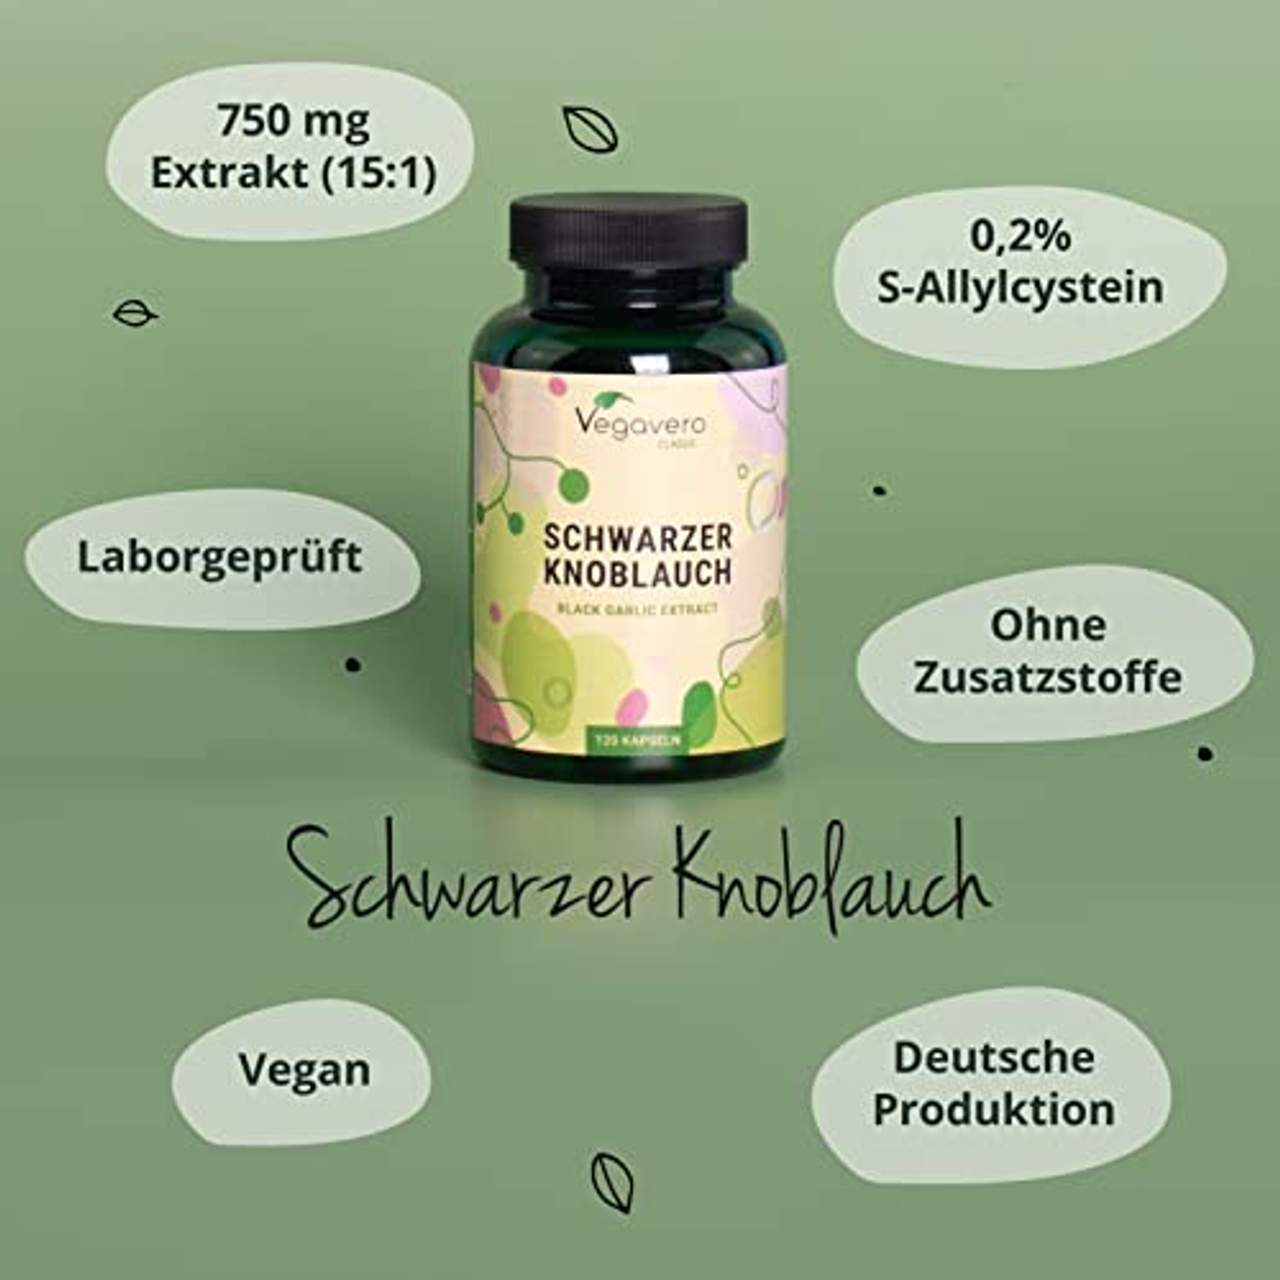 Schwarzer Knoblauch Vegavero 6000 mg